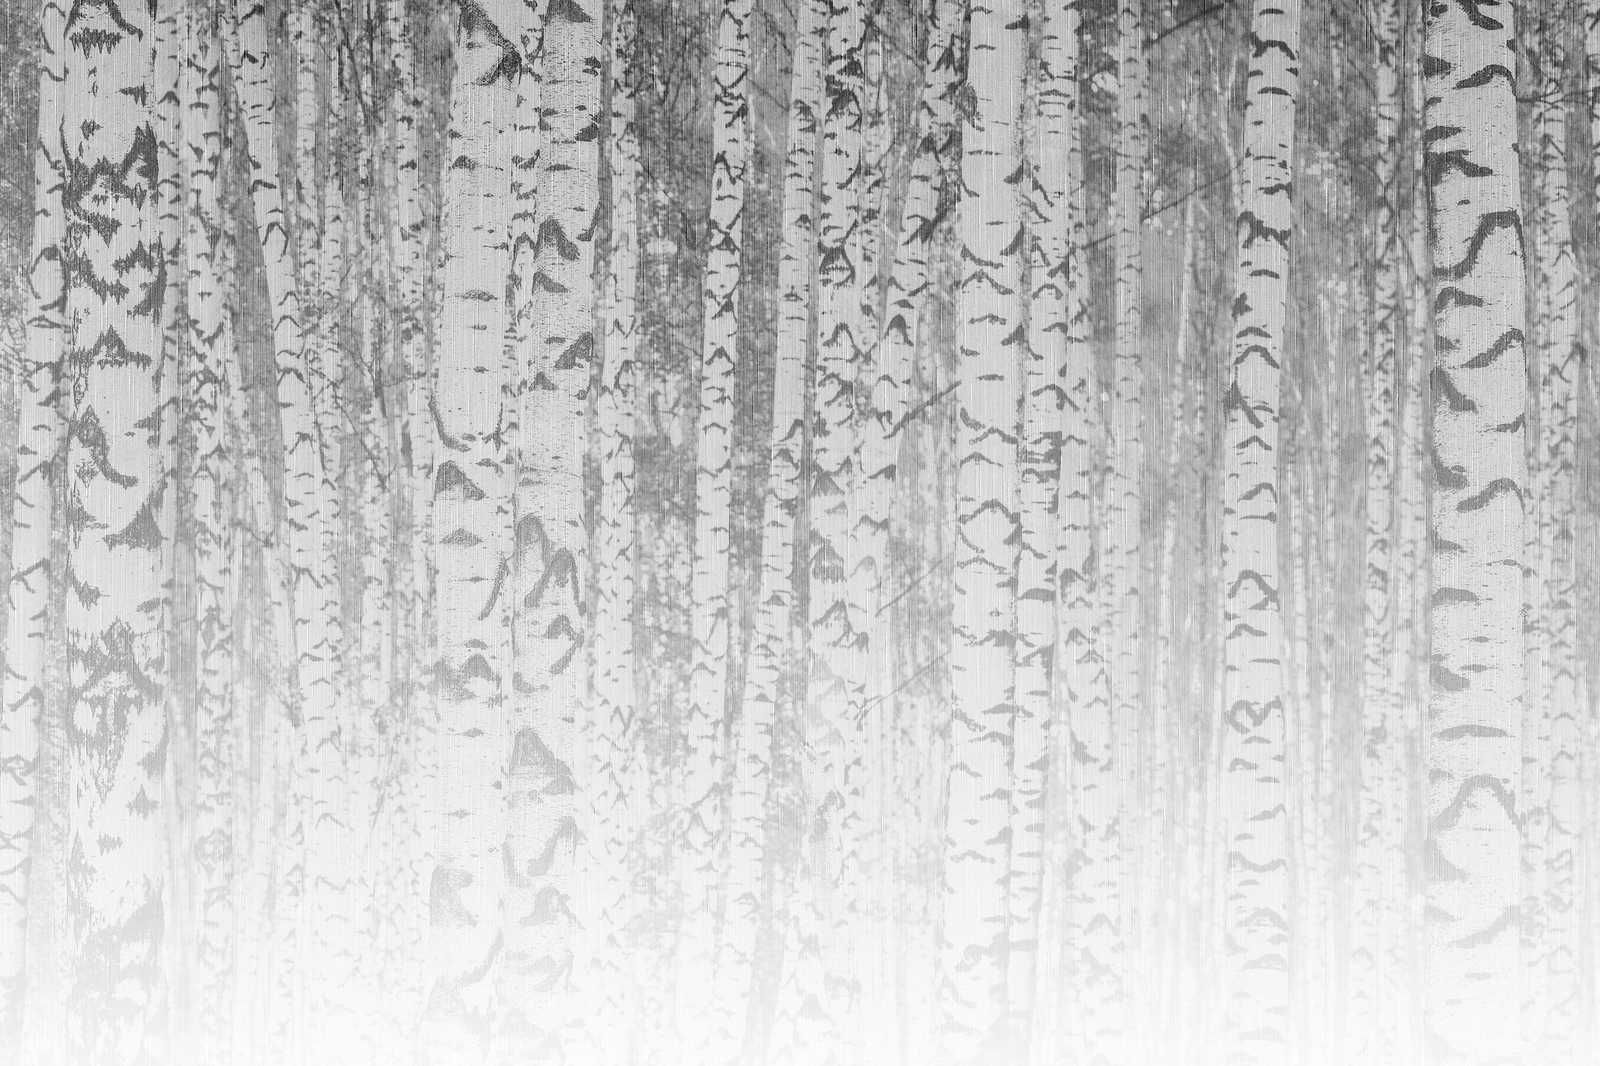             Canvas schilderij lichte berkenstammen in mistig bos - 0,90 m x 0,60 m
        